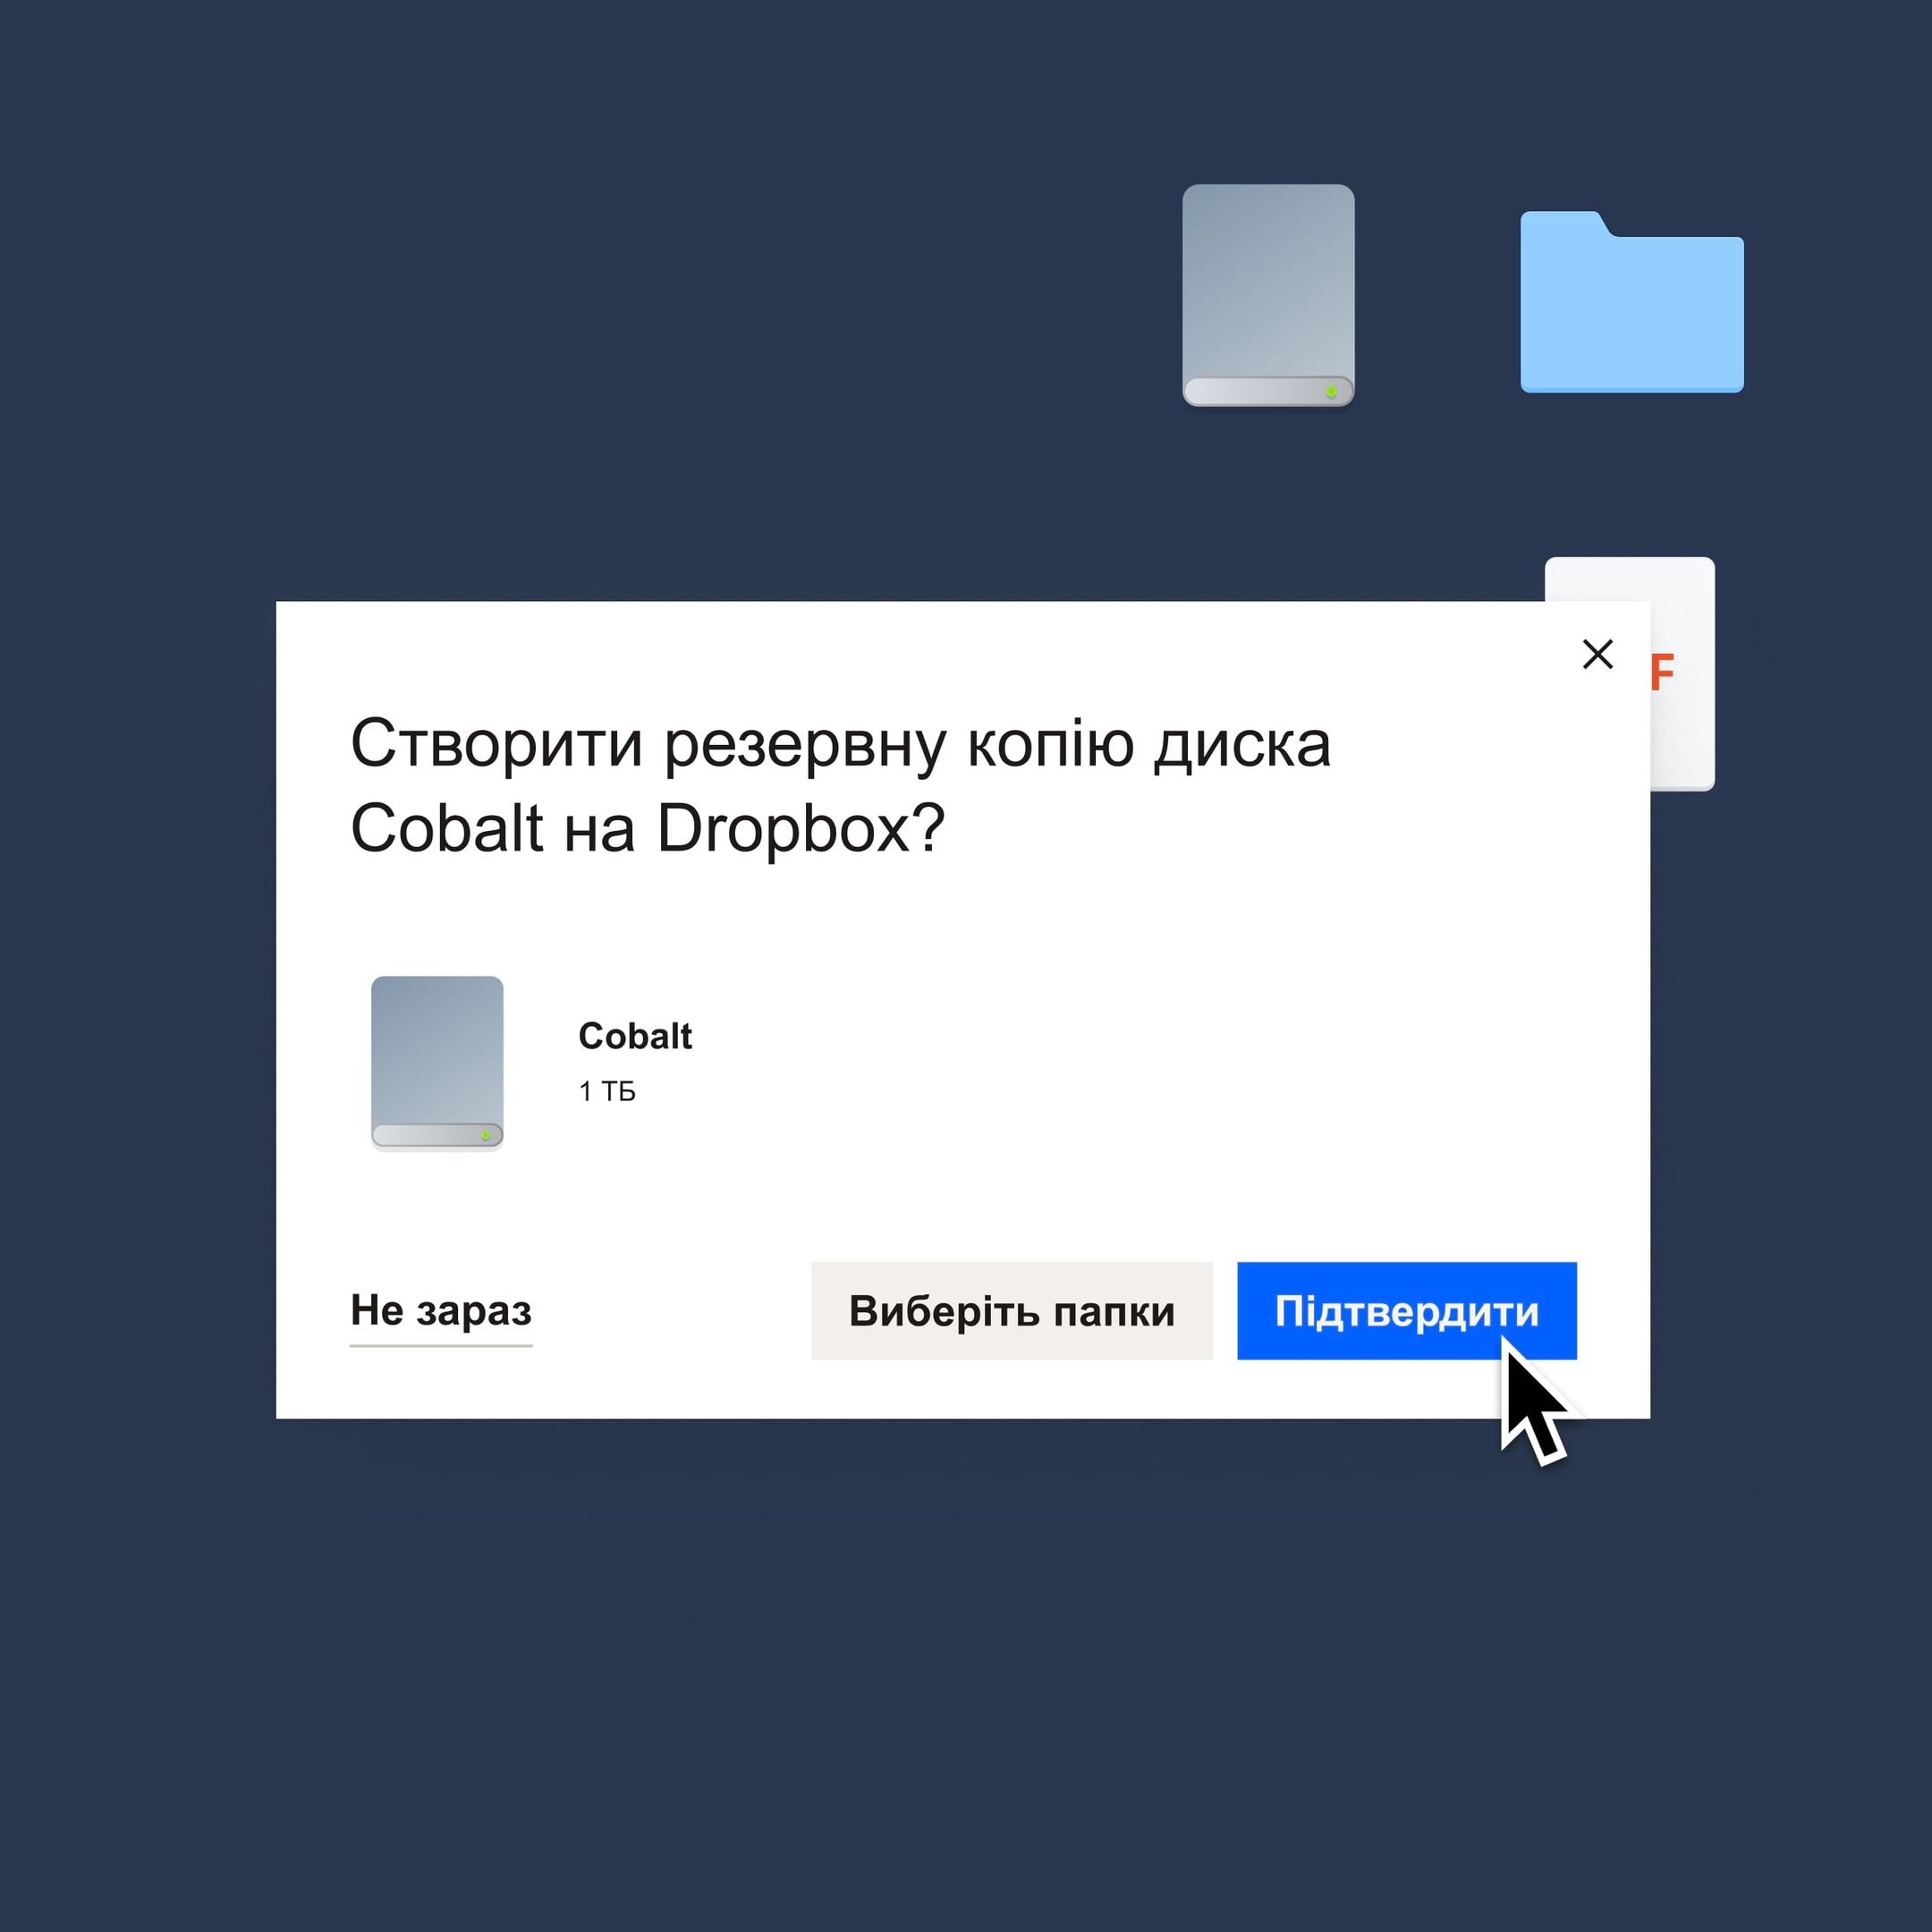 Користувач натискає синю кнопку «Підтвердити», щоб створити резервну копію диска Cobalt у Dropbox